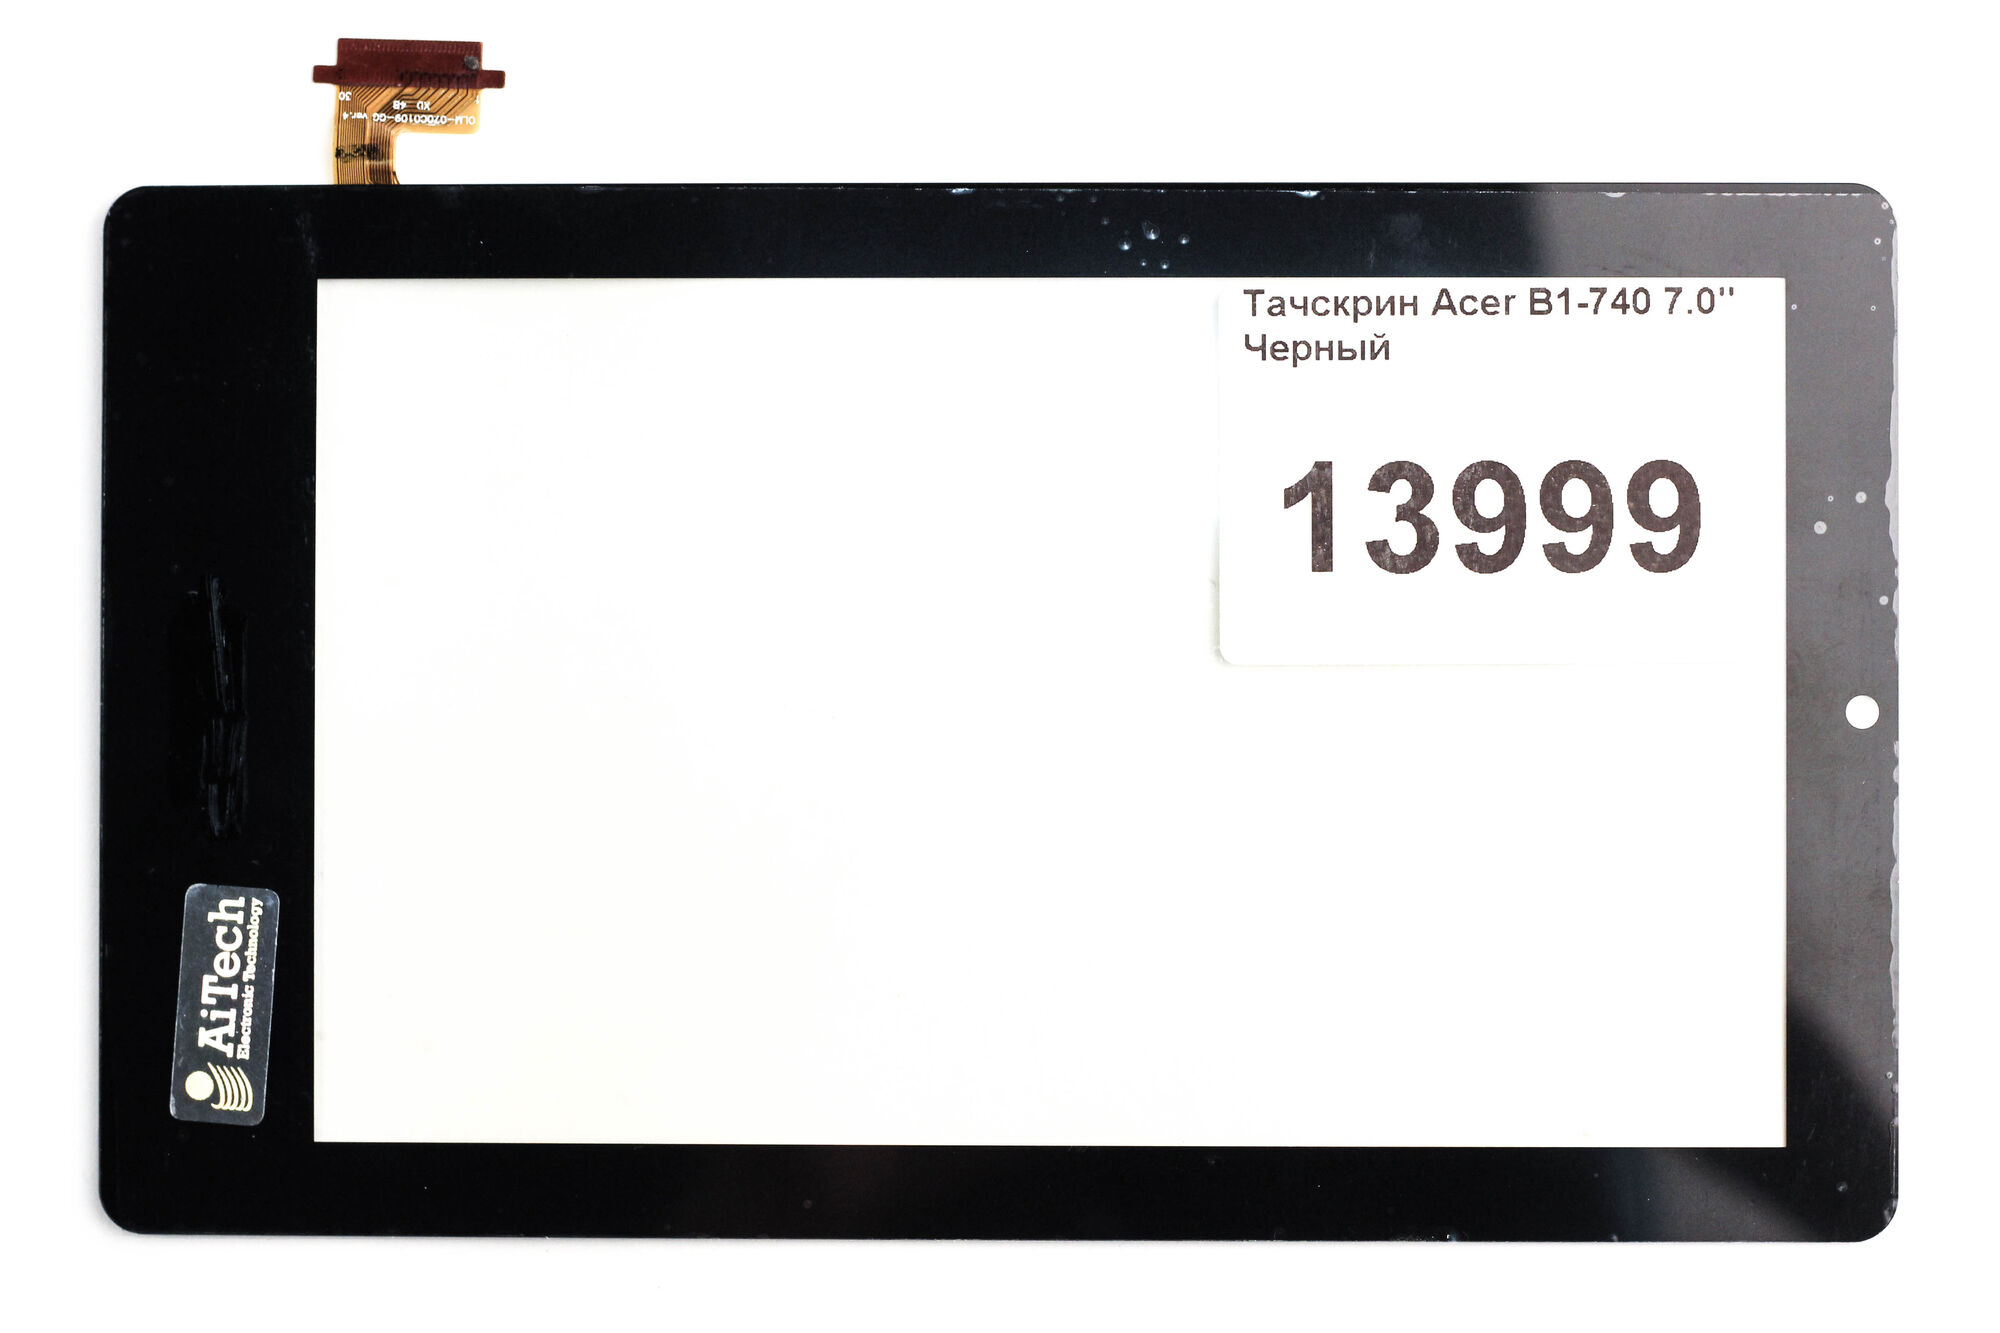 Тачскрин Acer B1-740 7.0" Черный